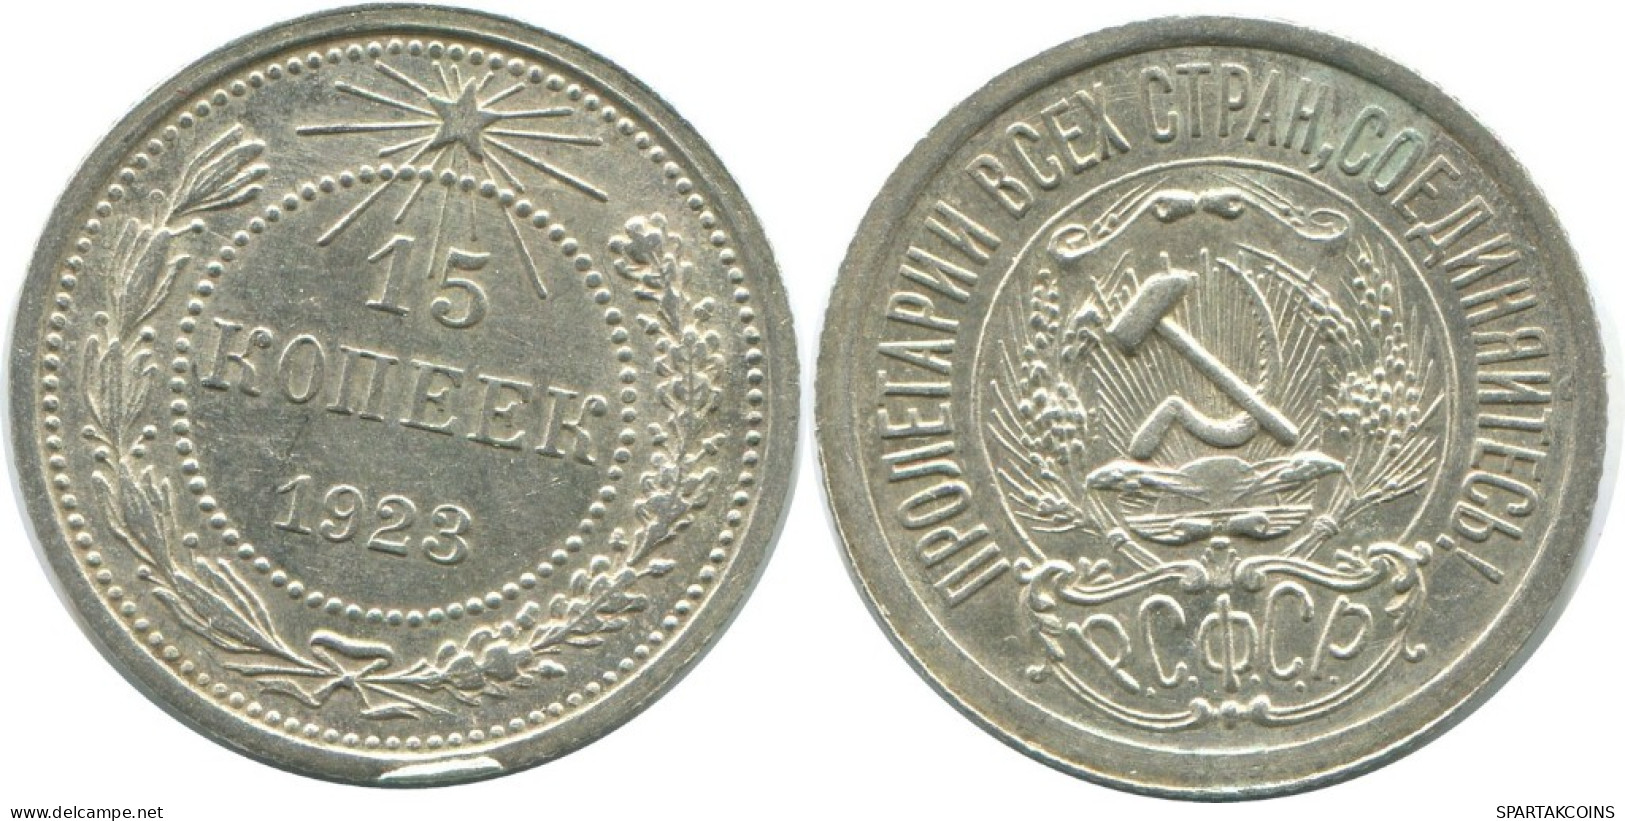 15 KOPEKS 1923 RUSSIA RSFSR SILVER Coin HIGH GRADE #AF055.4.U.A - Russland